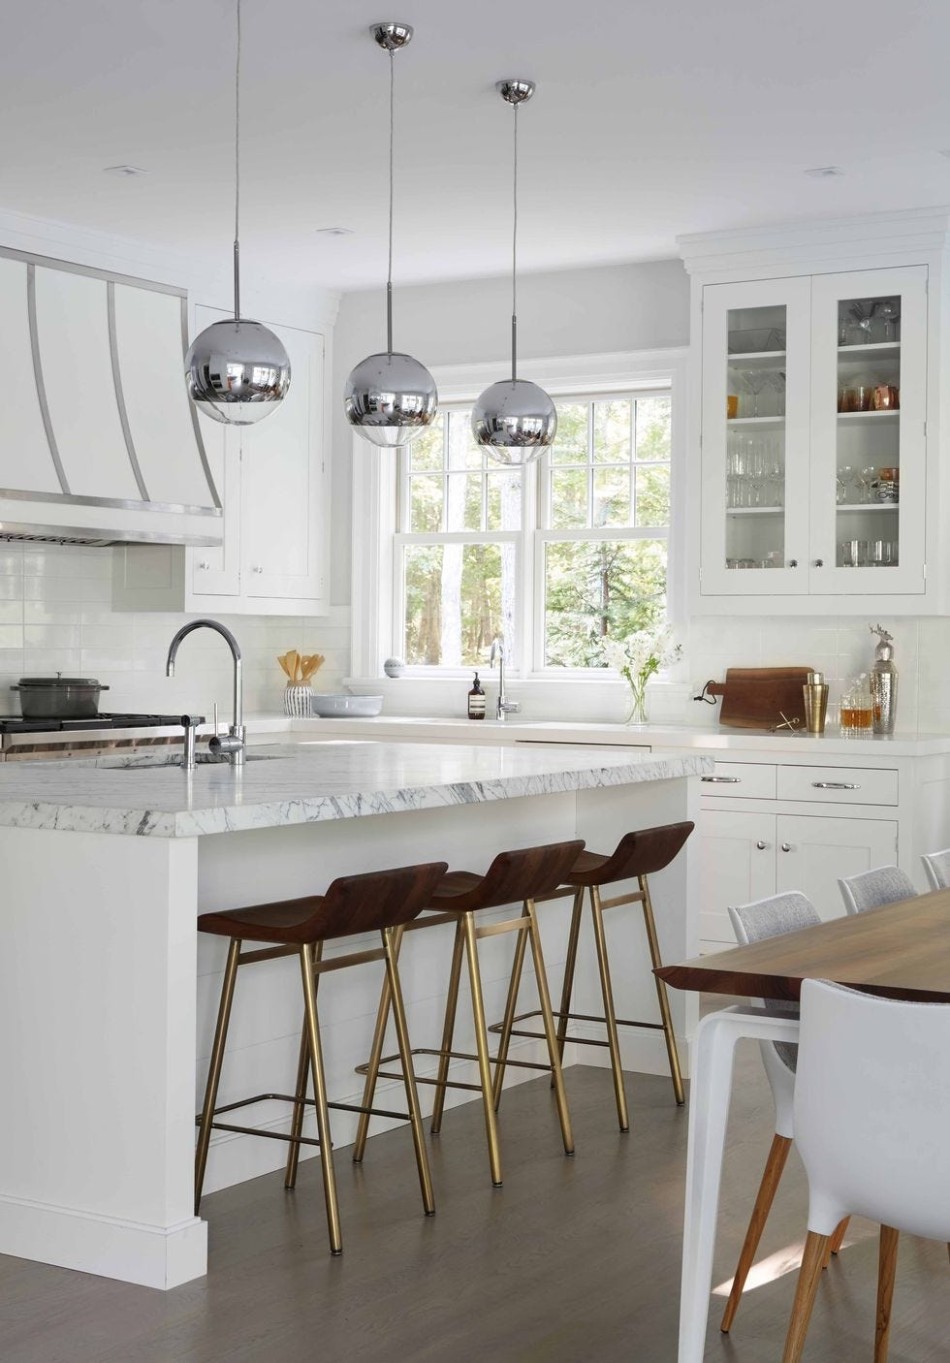 6 Best White Kitchen Ideas - Photos of Modern White Kitchen Designs - modern white kitchens